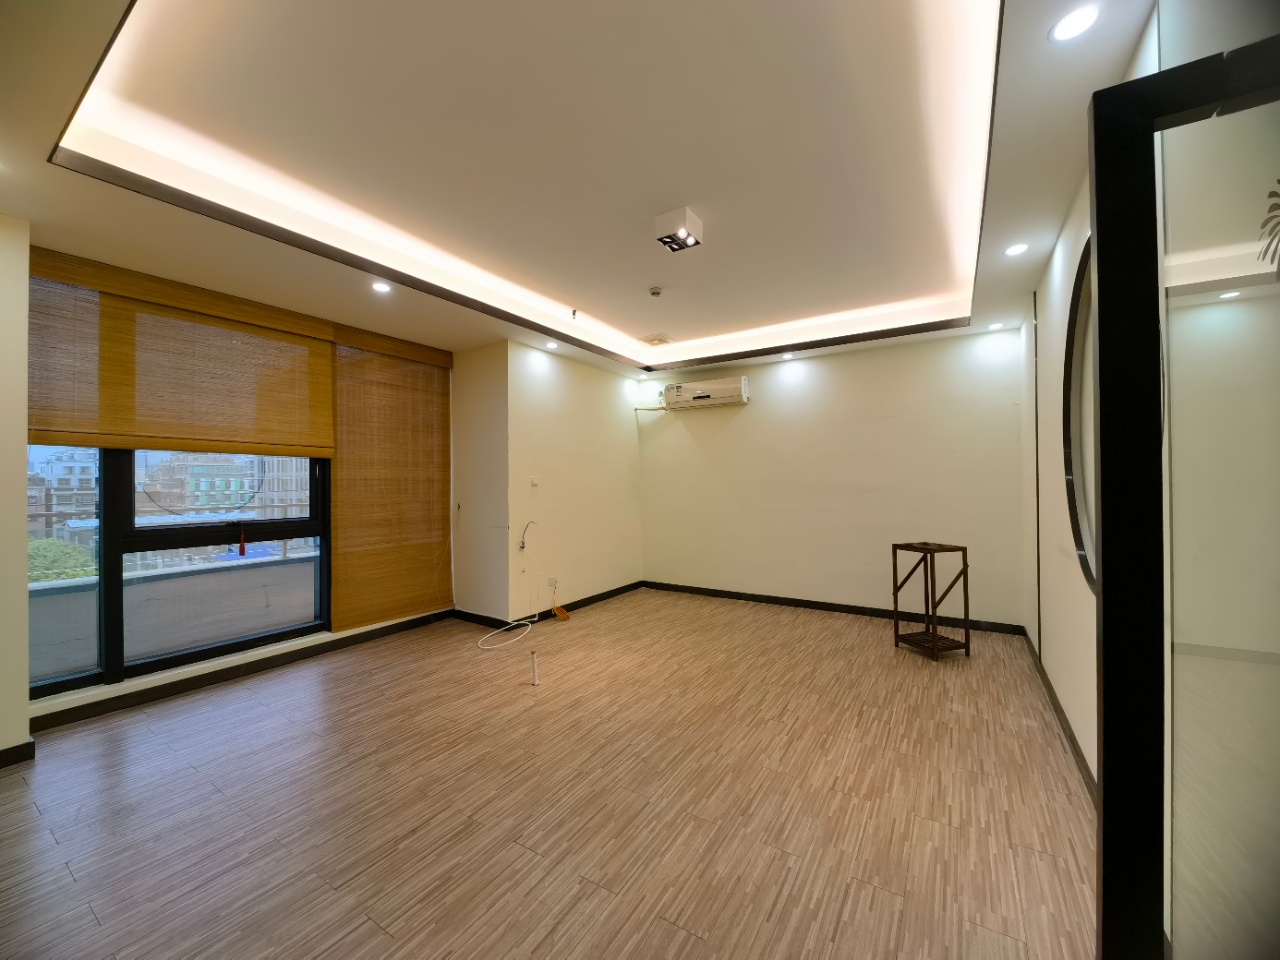 海珠区大塘地铁站附近430平方精装修办公室